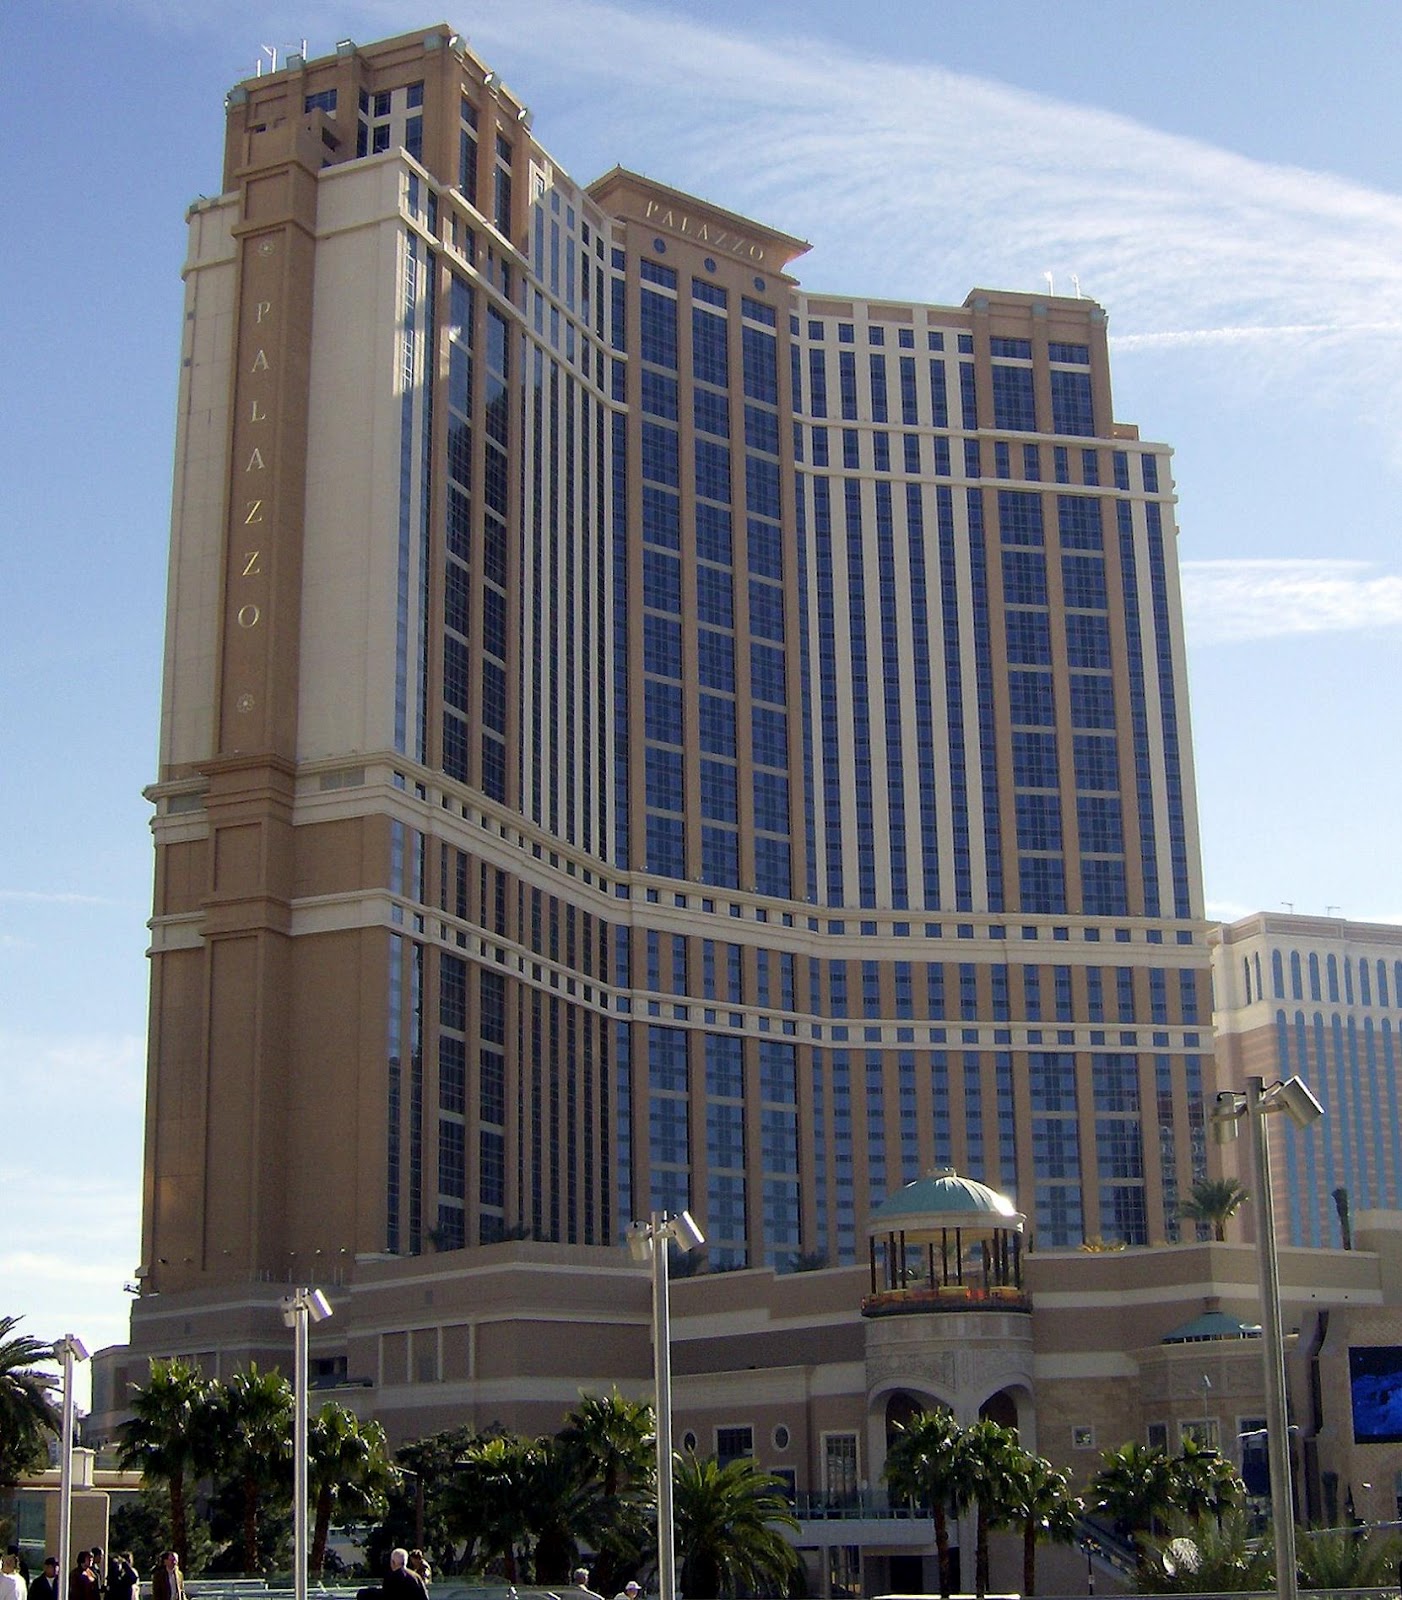 Gambar hotel terbesar di dunia 2012 Terlengkap Kumpulan 